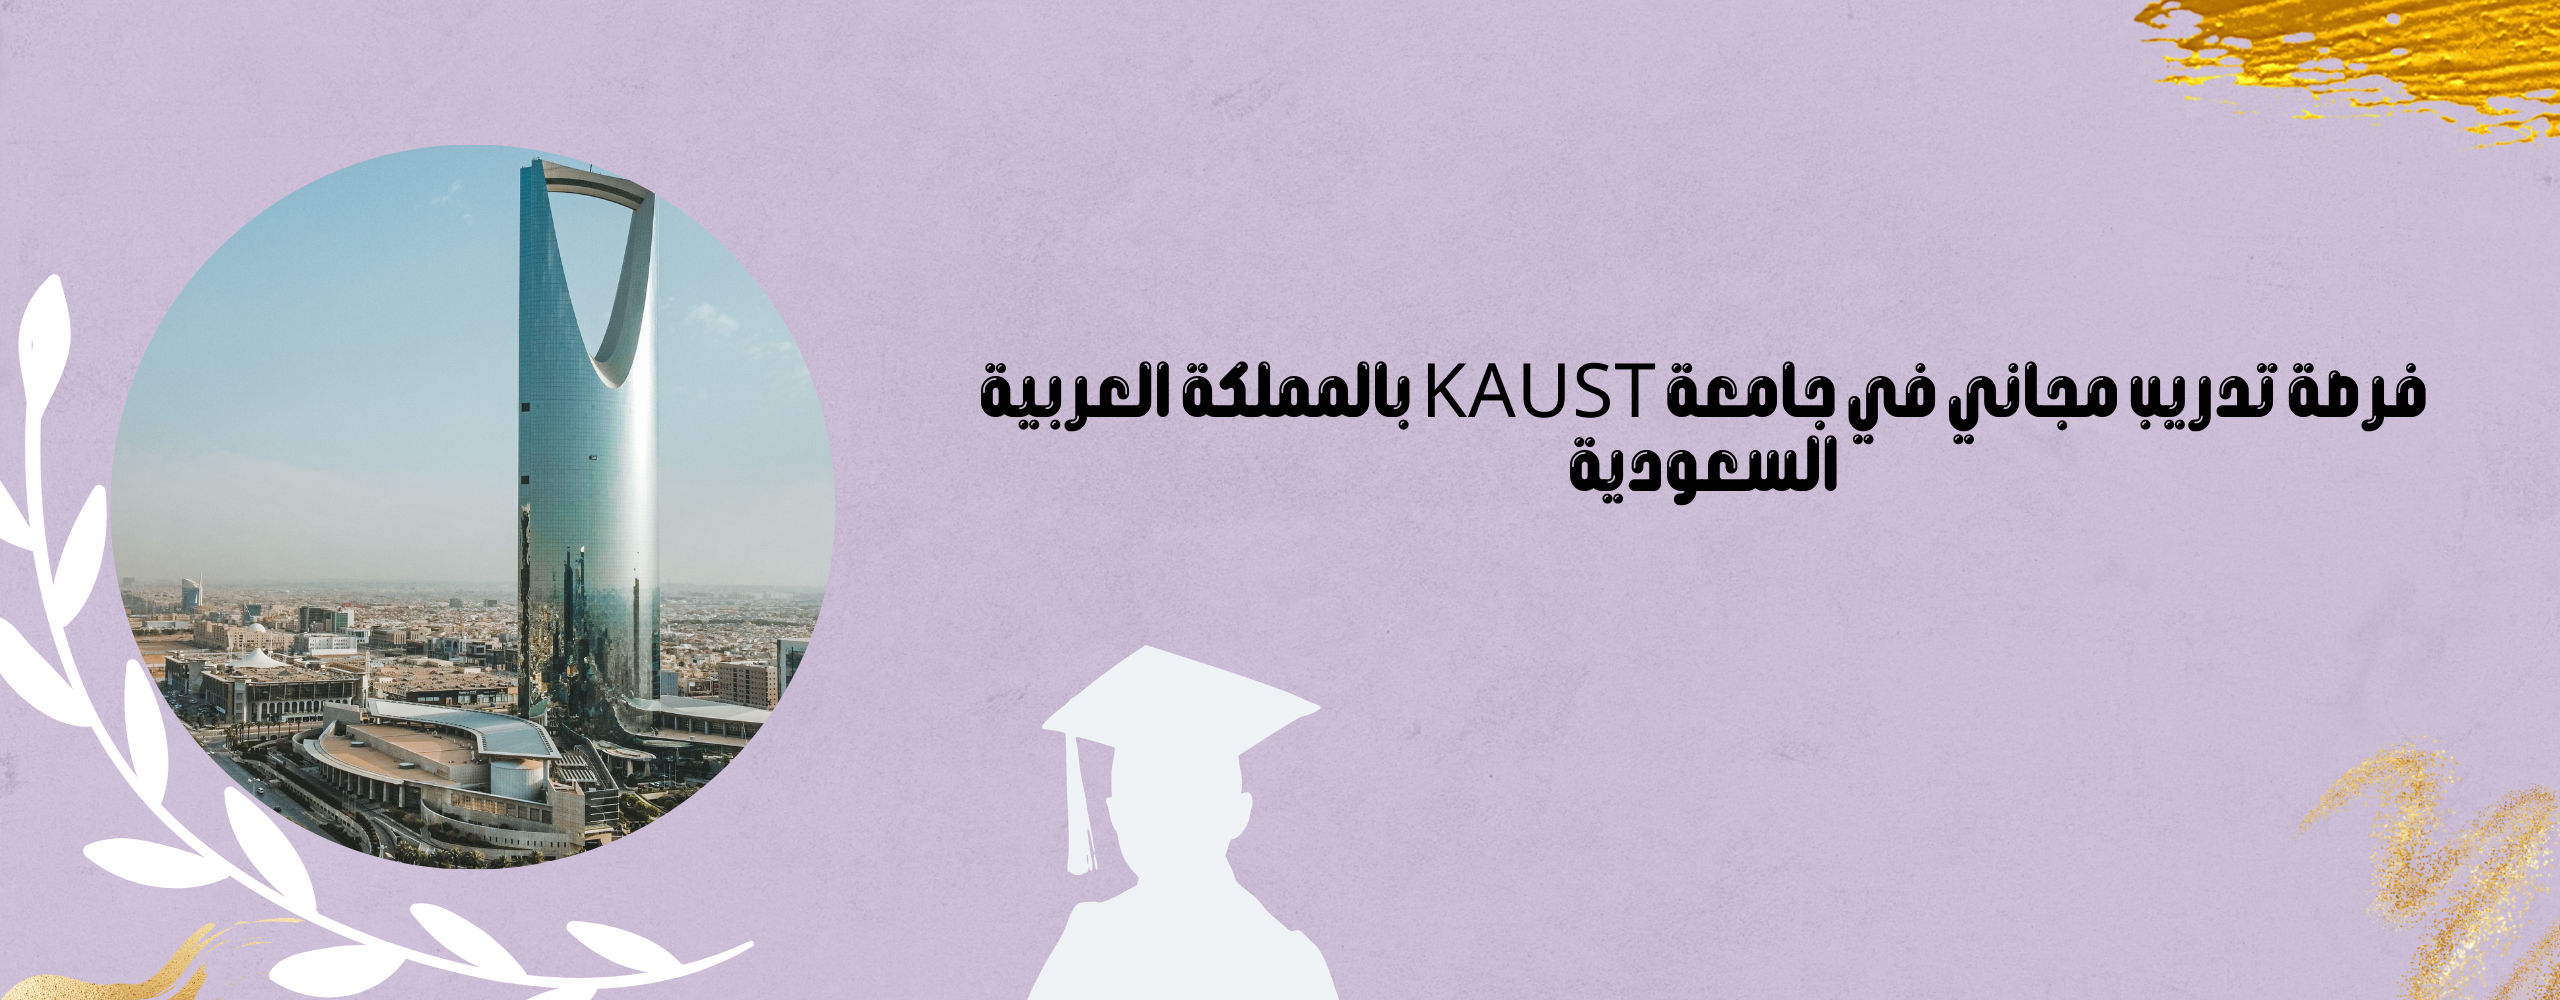 فرصة تدريب مجاني في جامعة KAUST بالمملكة العربية السعودية